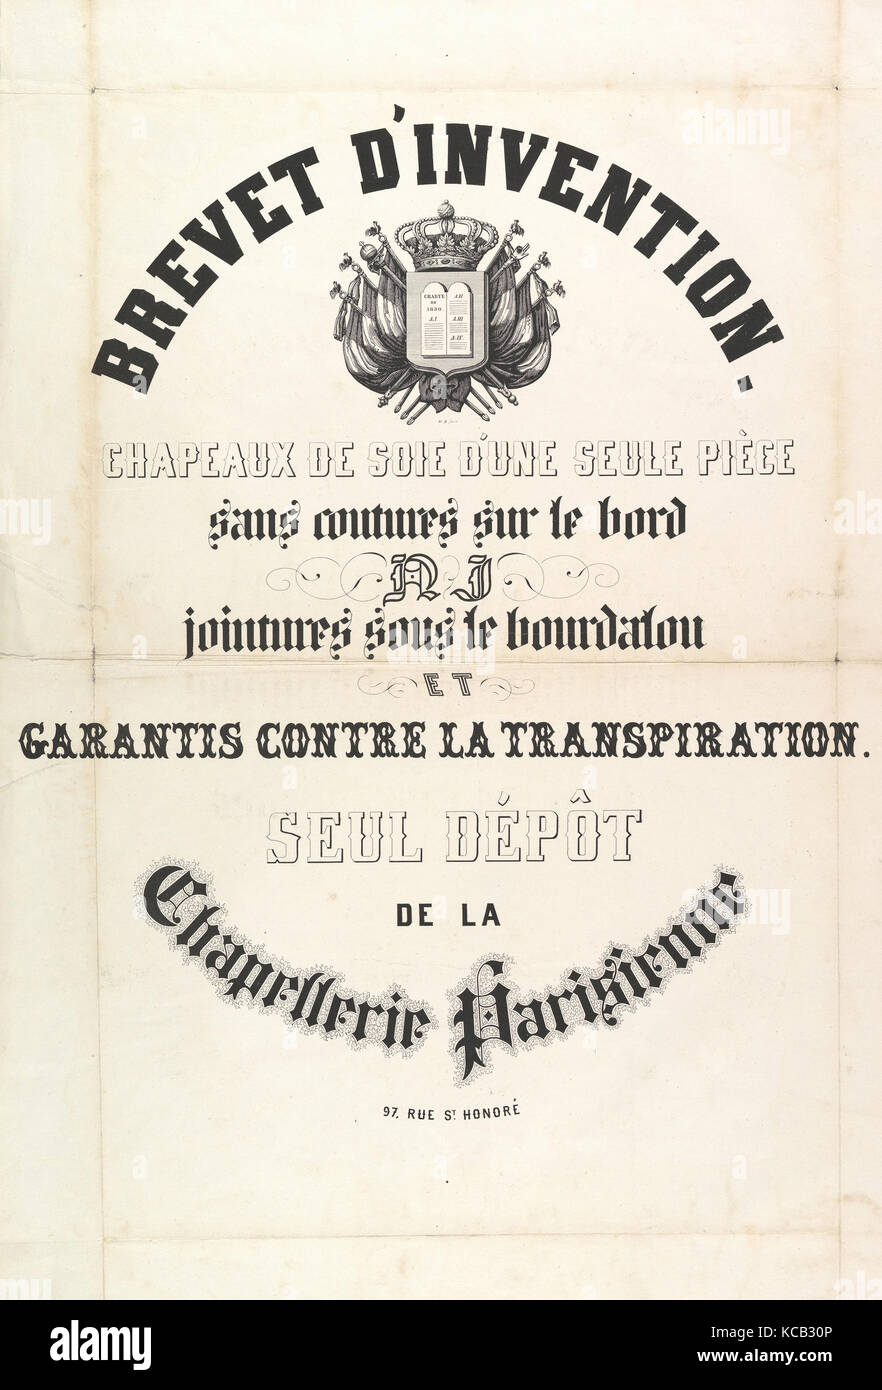 Brevet d'invenzione. Chapeaux de soie d'une seule pièce..., anonimo, francese del XIX secolo xix secolo Foto Stock